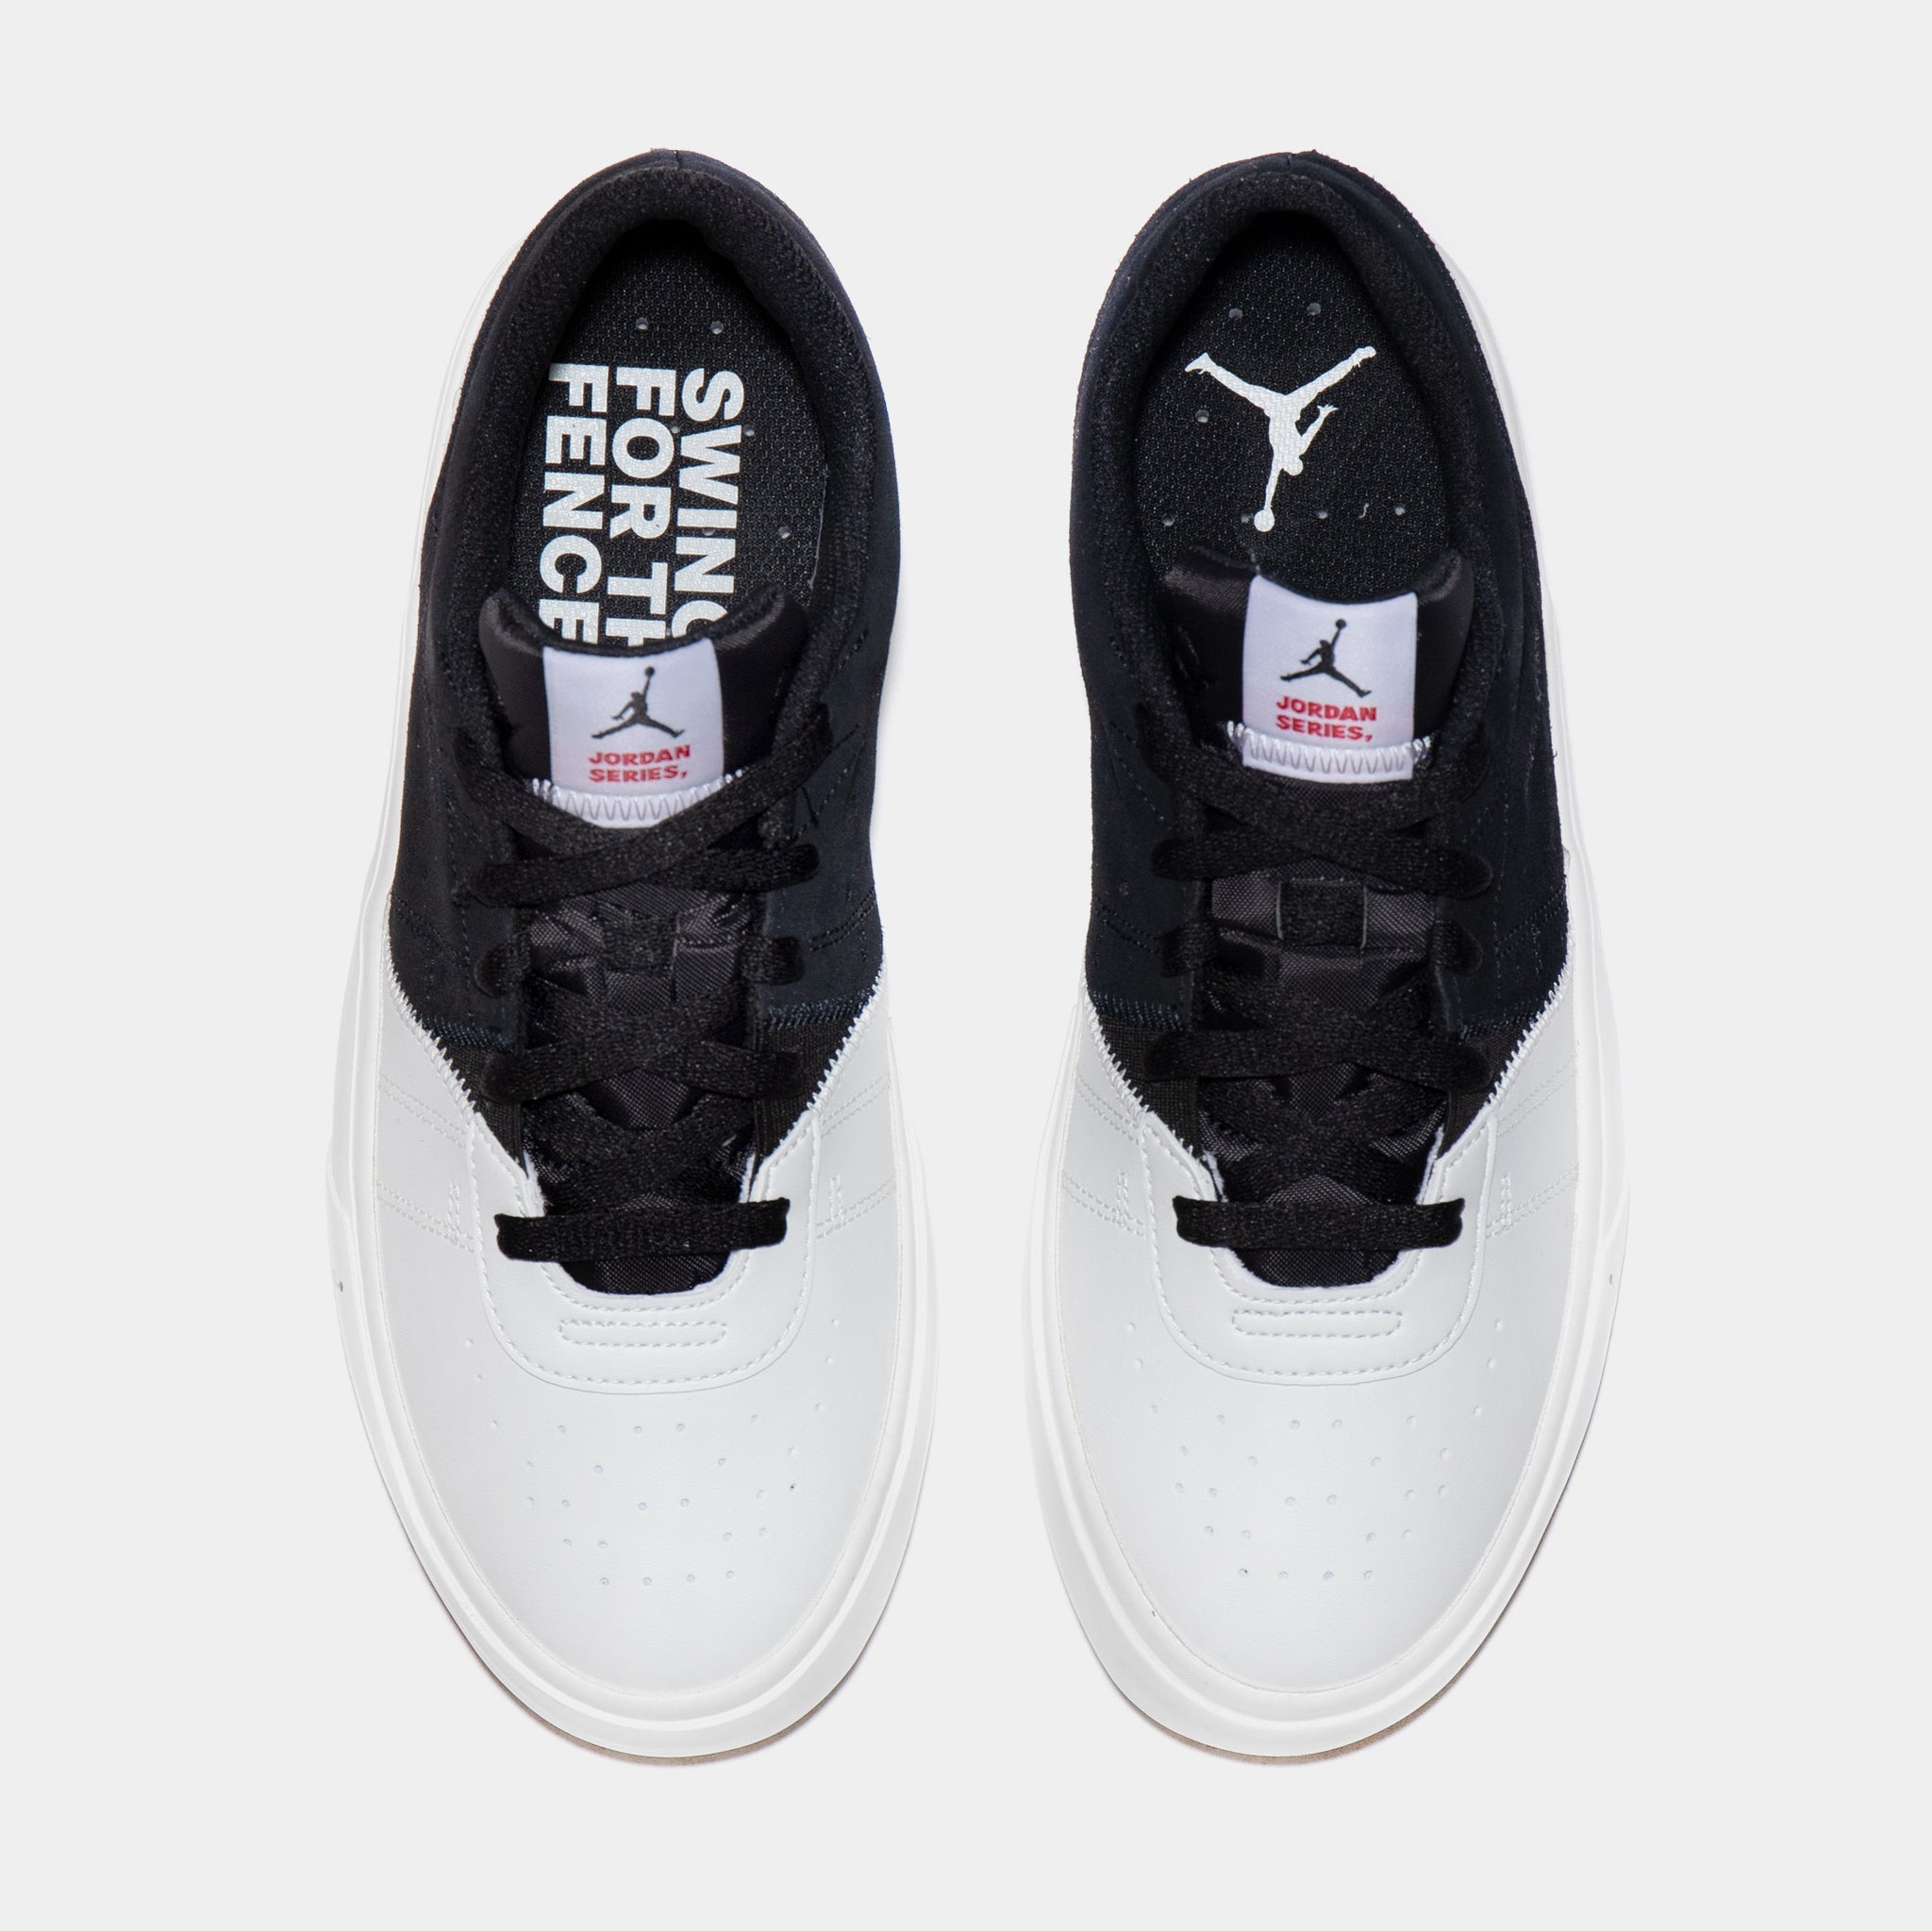 Jordan Series ES Mens Lifestyle Shoes Black White DN1856-061 – Shoe Palace